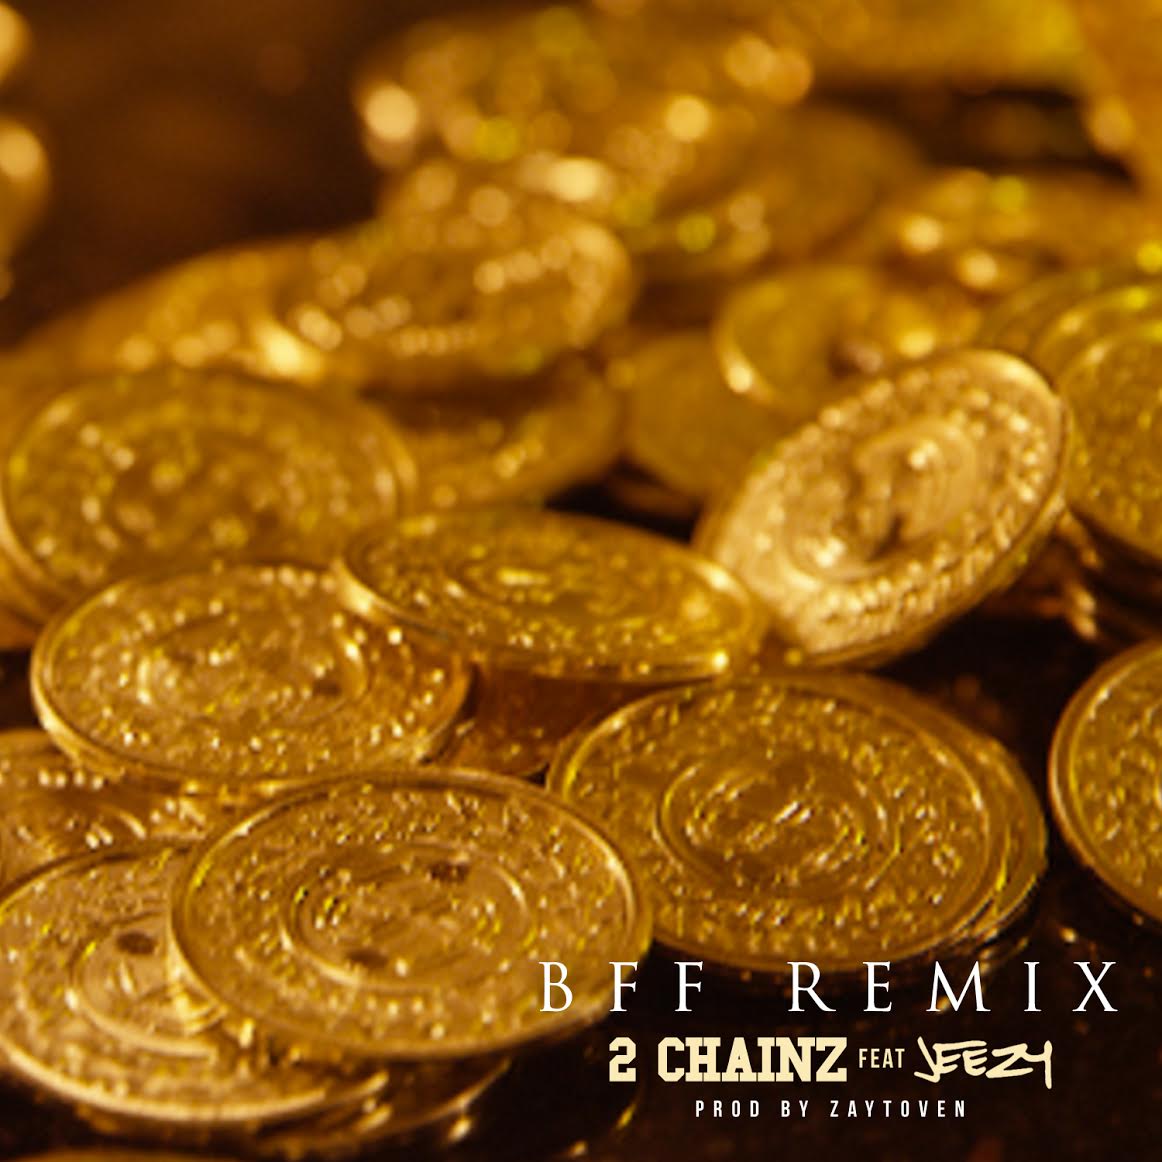 2-chainz-jeezy-bff-remix